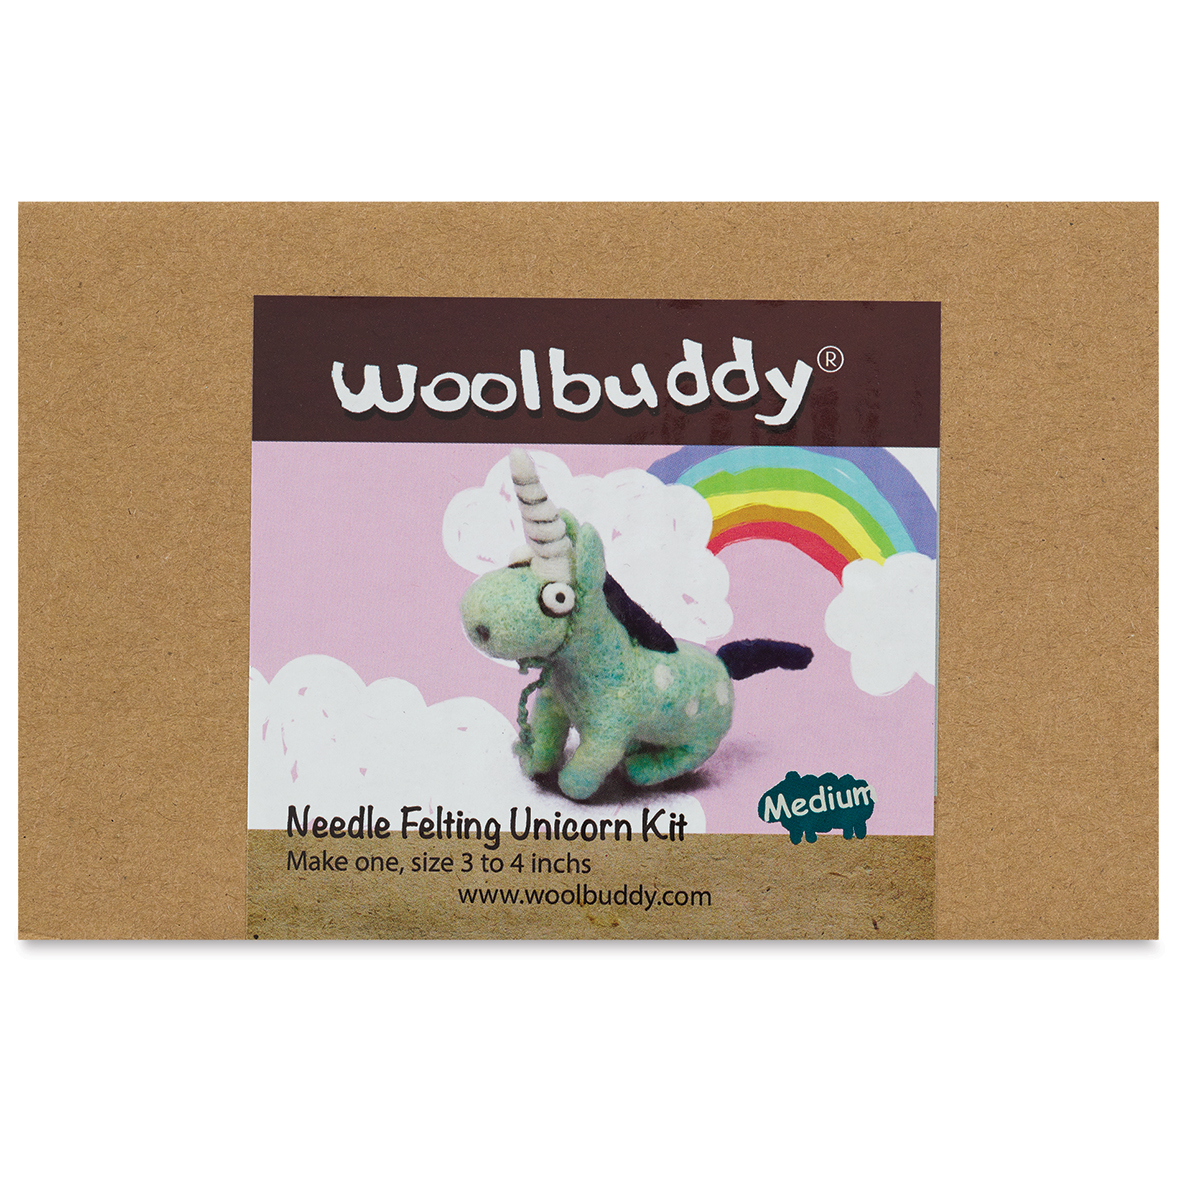 Woolbuddy Needle Felting Kits